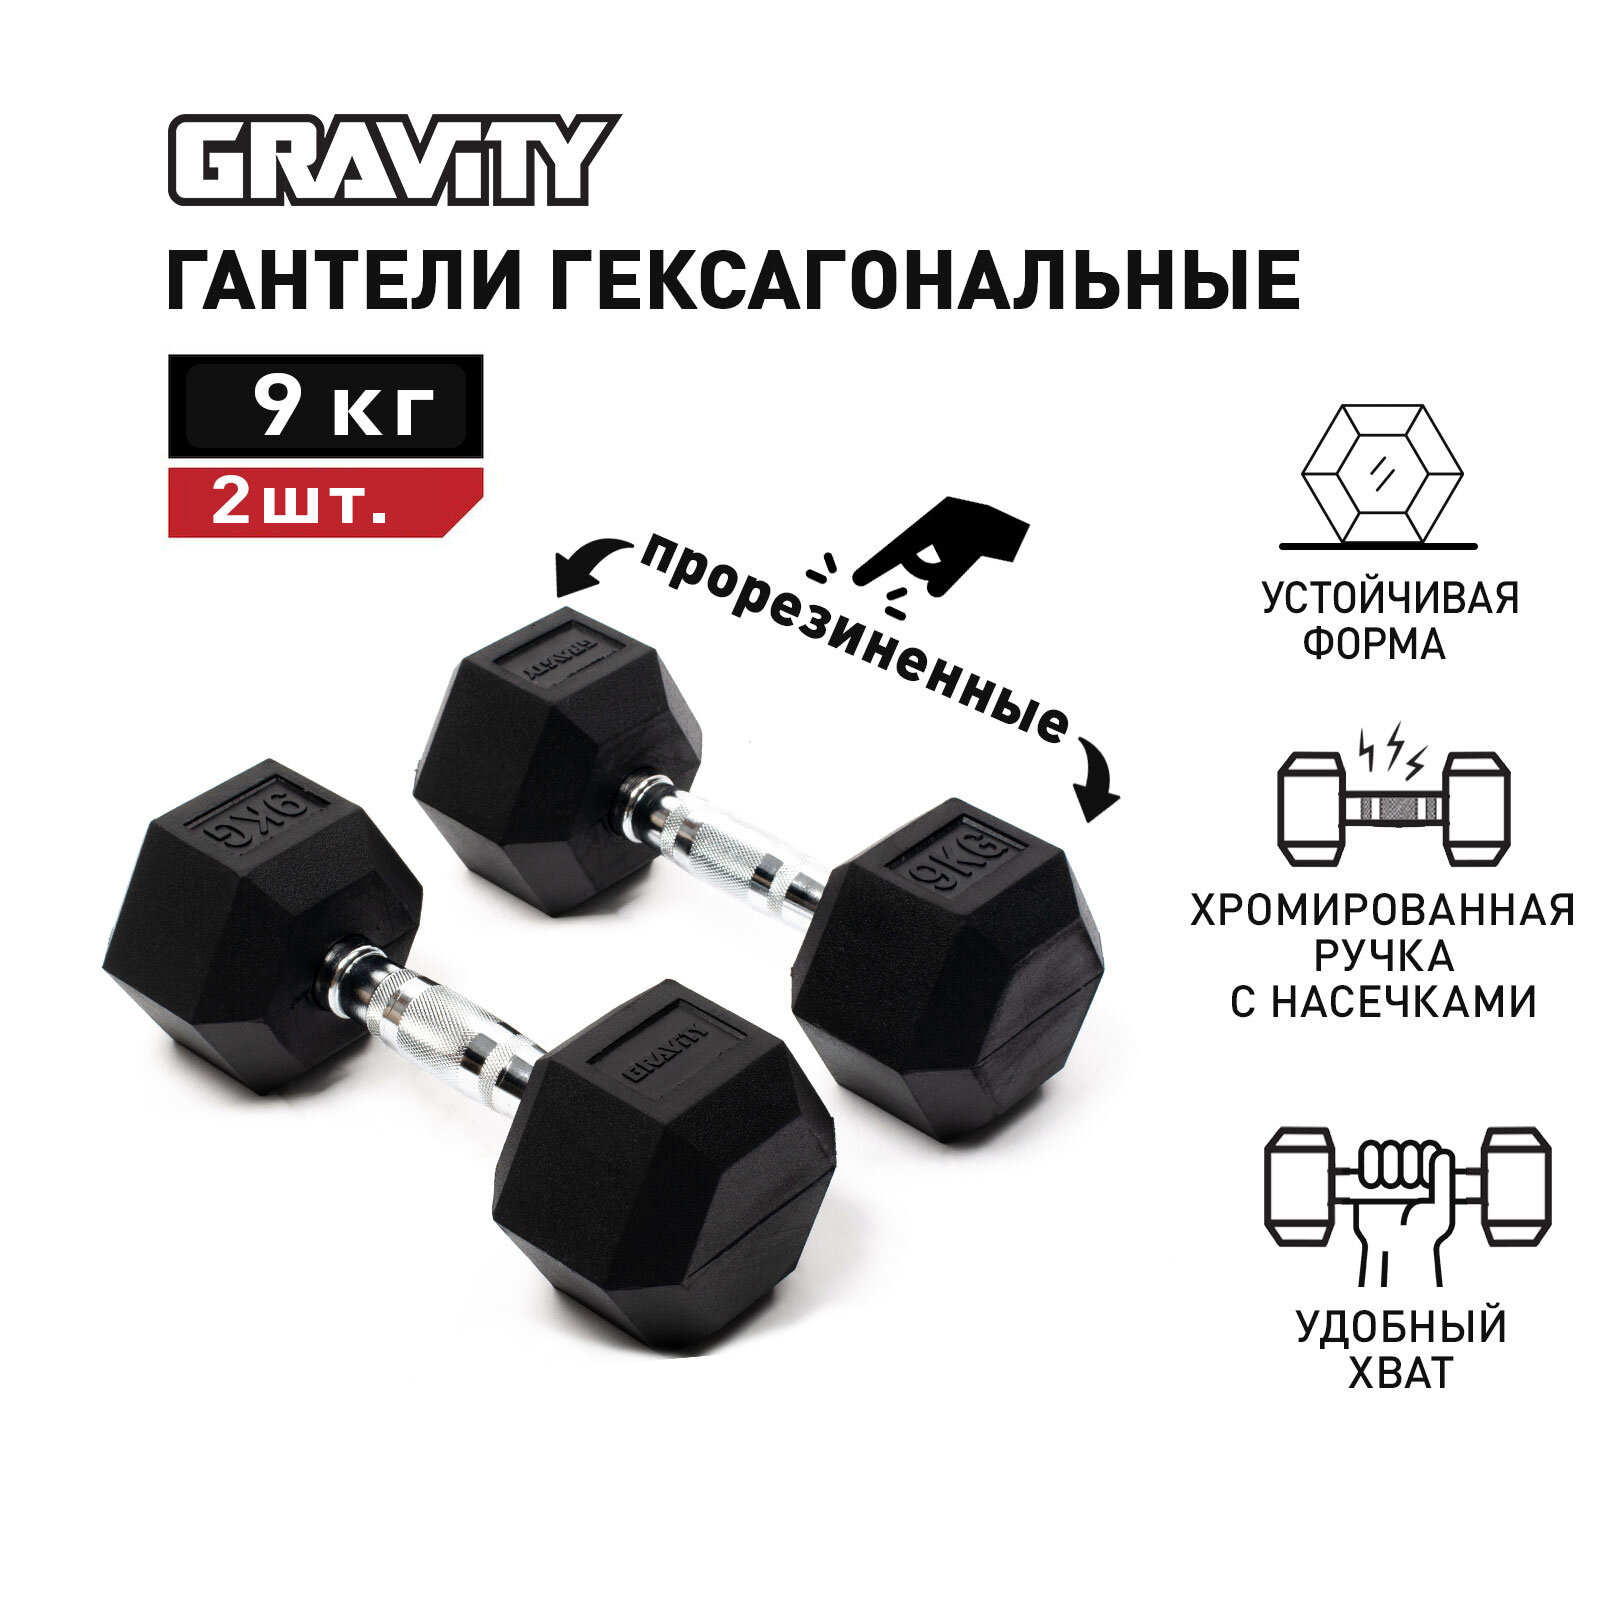 Пара гексагональных гантелей Gravity, вес одной гантели 9 кг, общий вес 18 кг, цвет черный